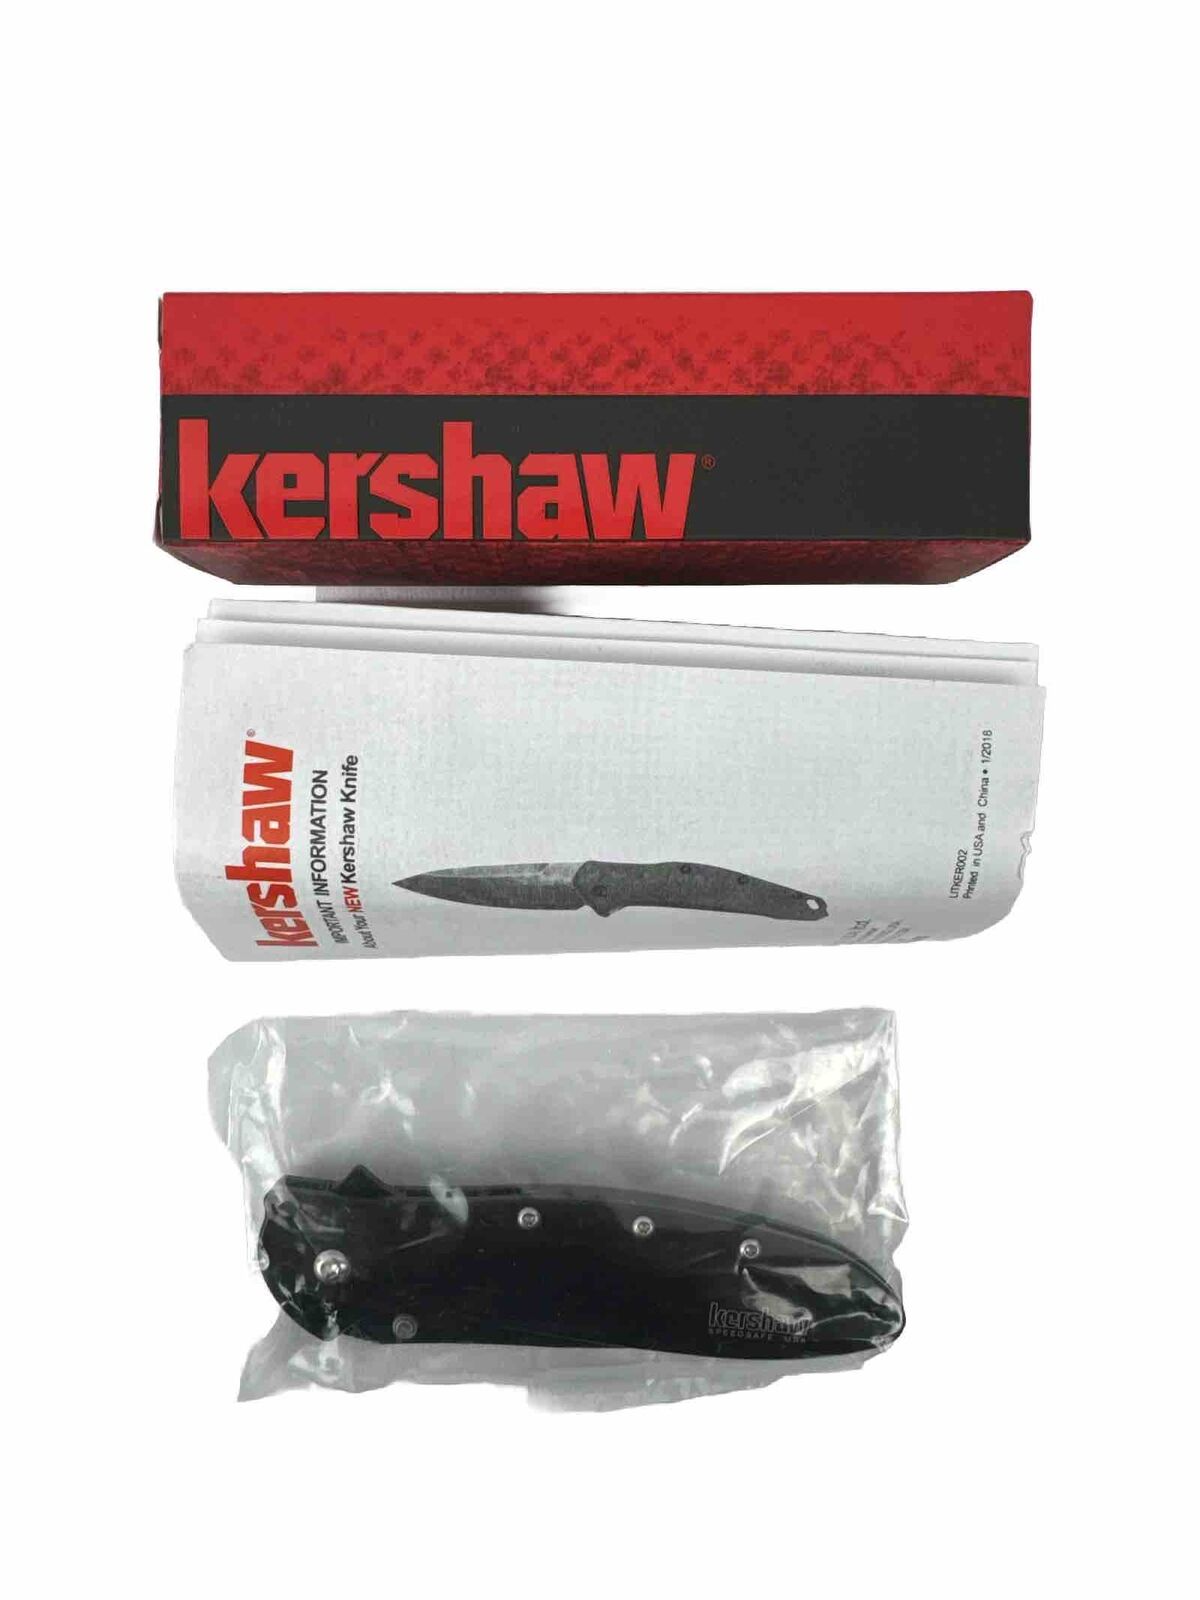 Kershaw New Ken Onion Leek 1660CKT Folding Knife - Black